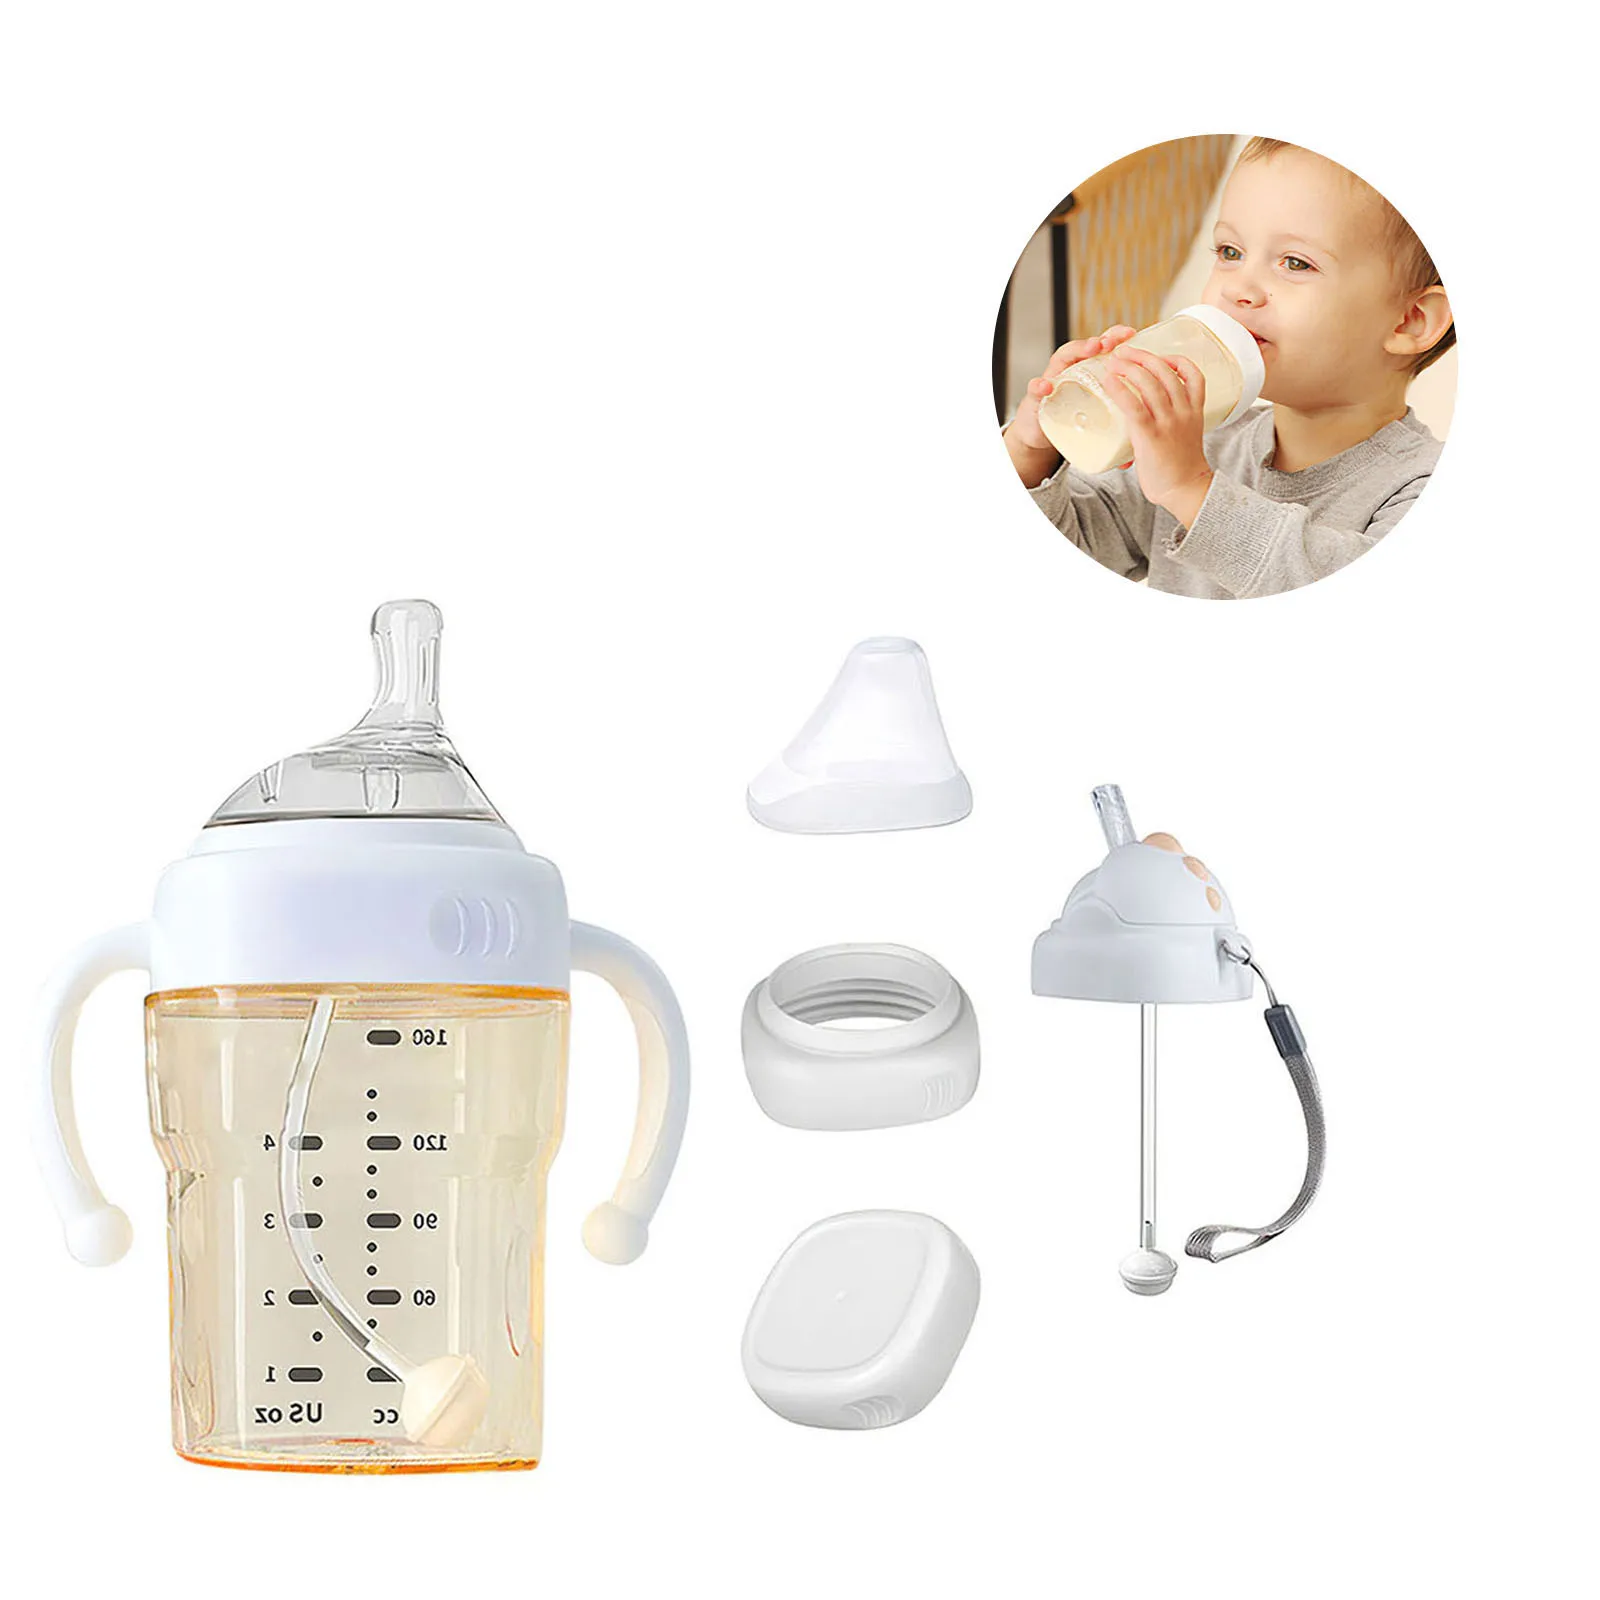 

Бутылочка для молока, портативная Детская Бутылочка с защитой от падения, большая открывающаяся конструкция, легко чистить, стандартная дл...